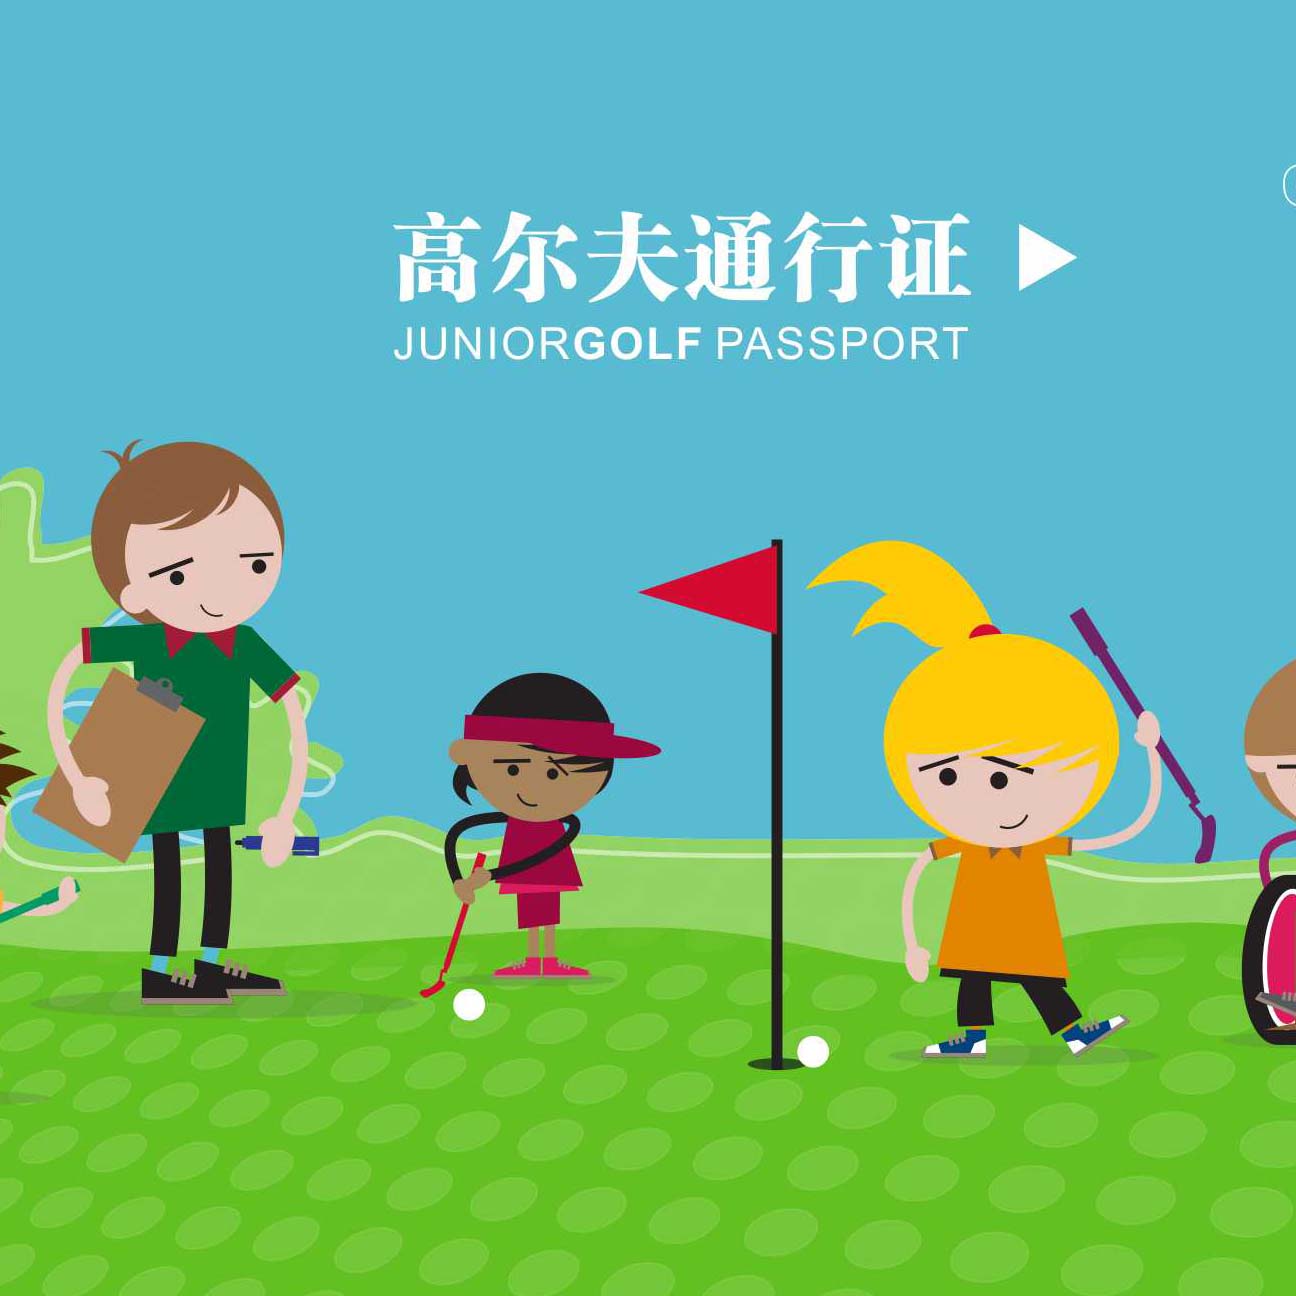 香港高尔夫通行证